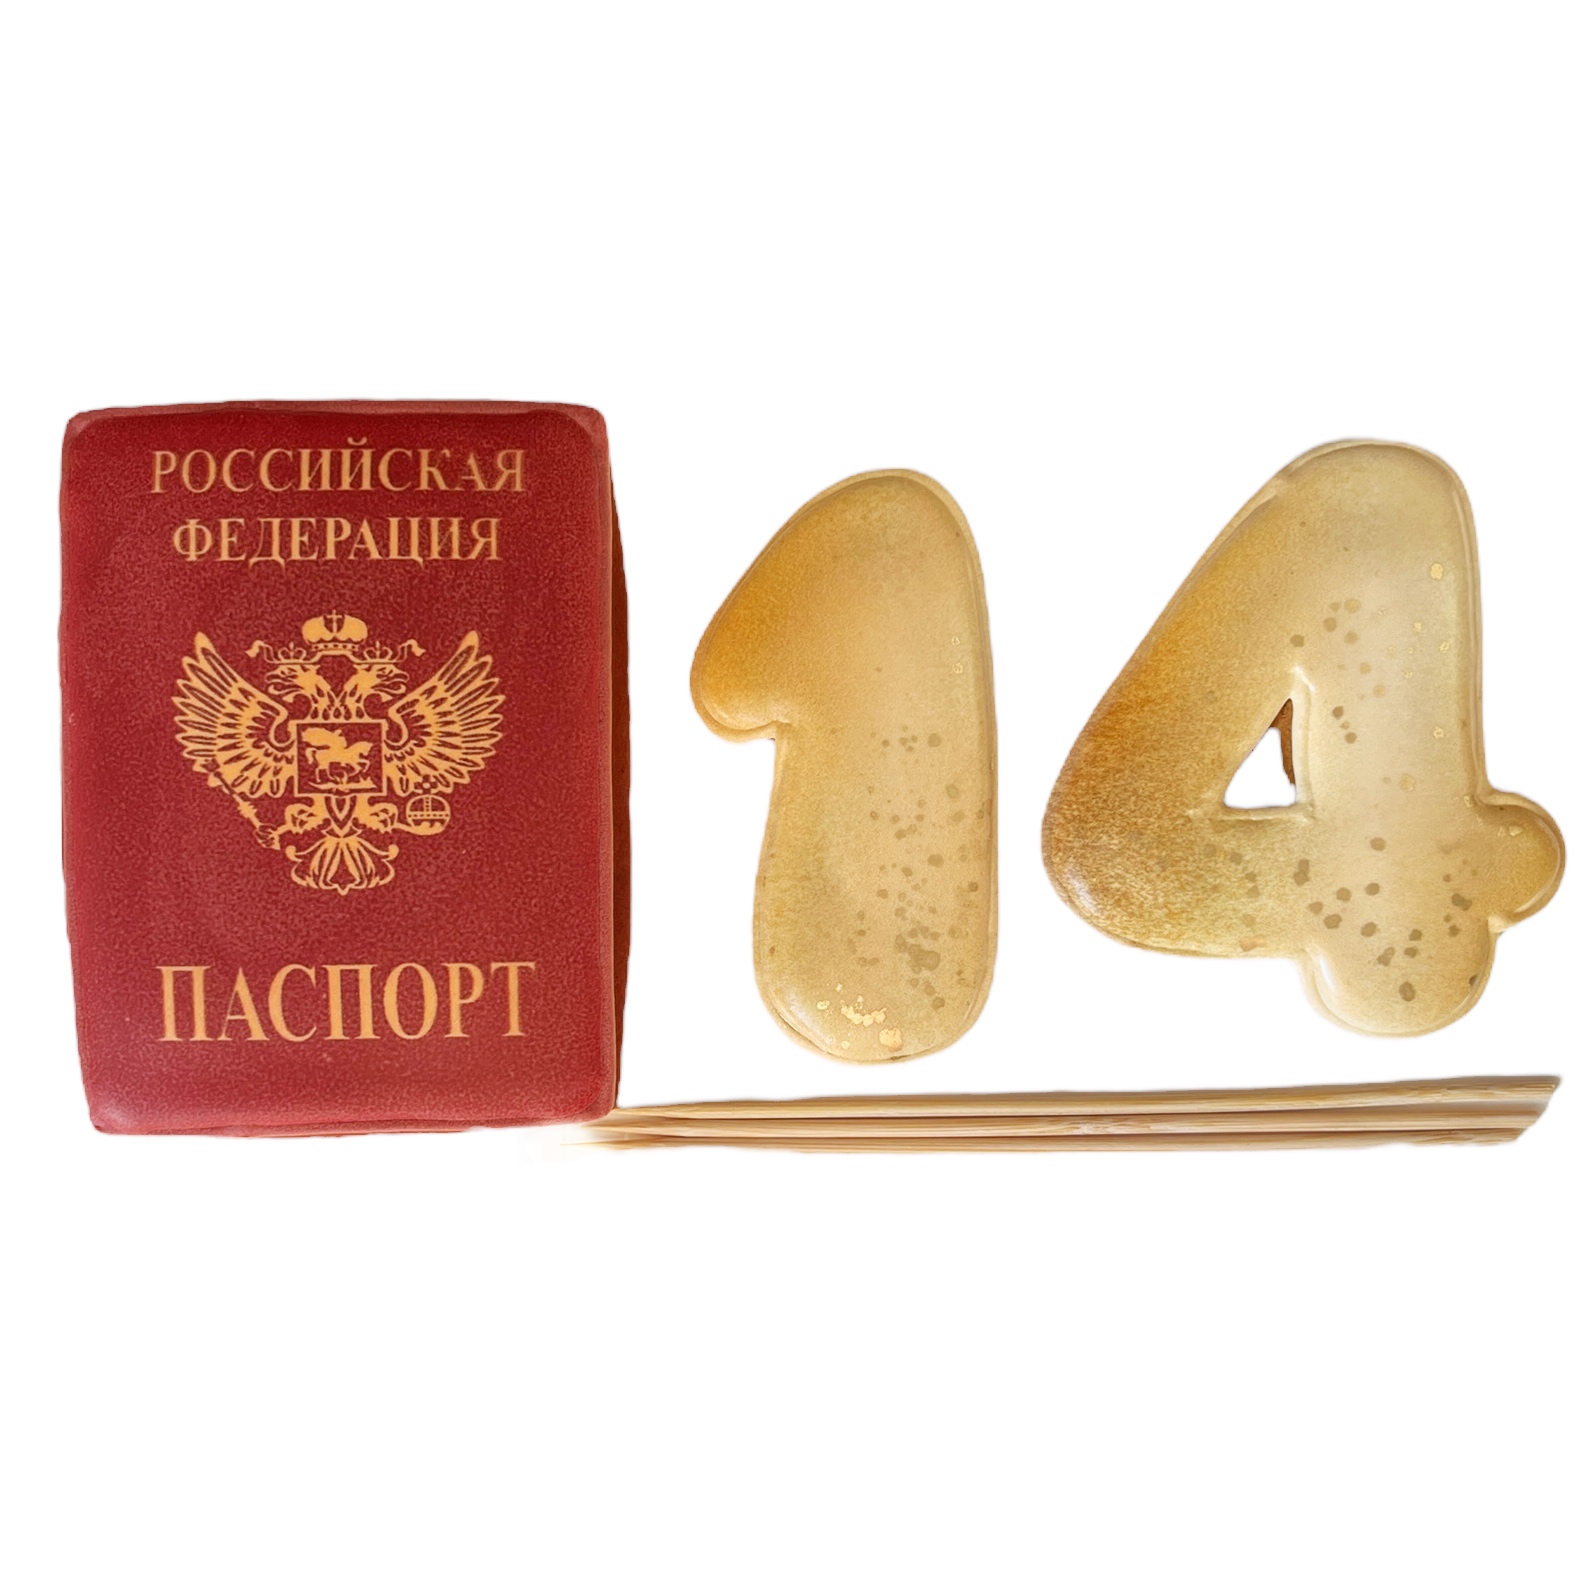 Набор пряников имбирных для торта Паспорт